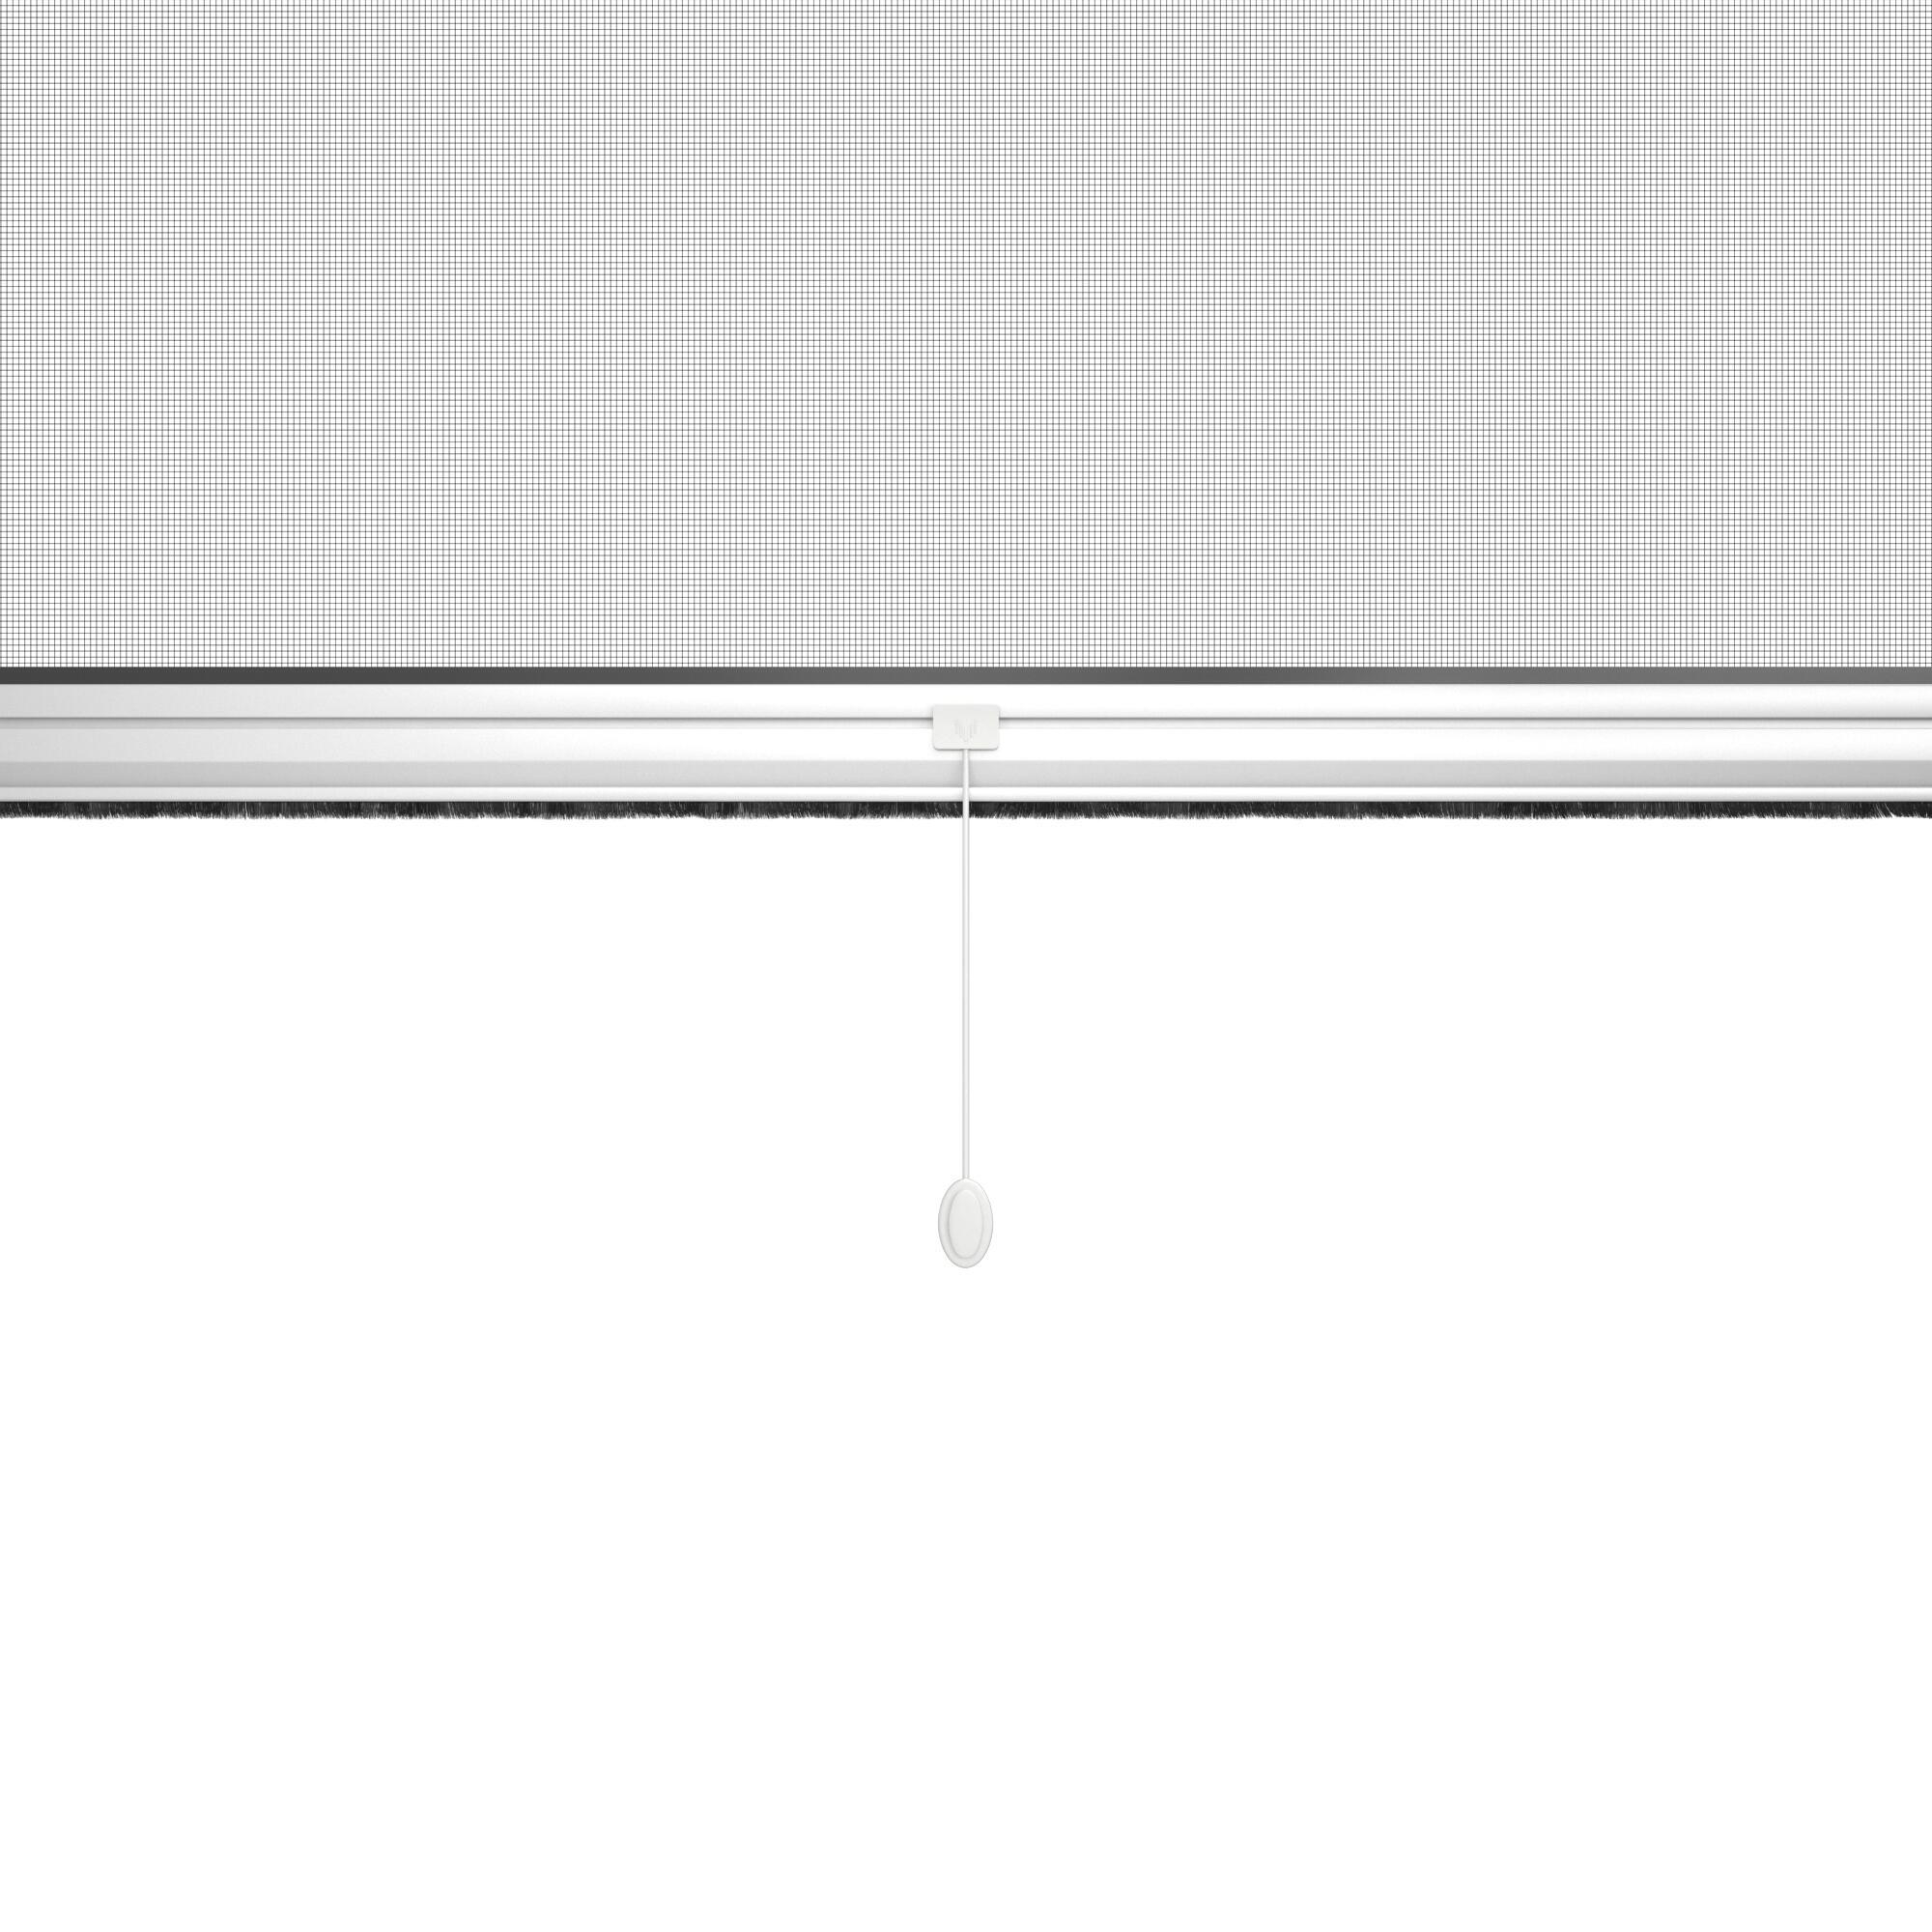 Zanzariera avvolgibile ARTENS per finestra L 100 x H 160 cm bianco - 10